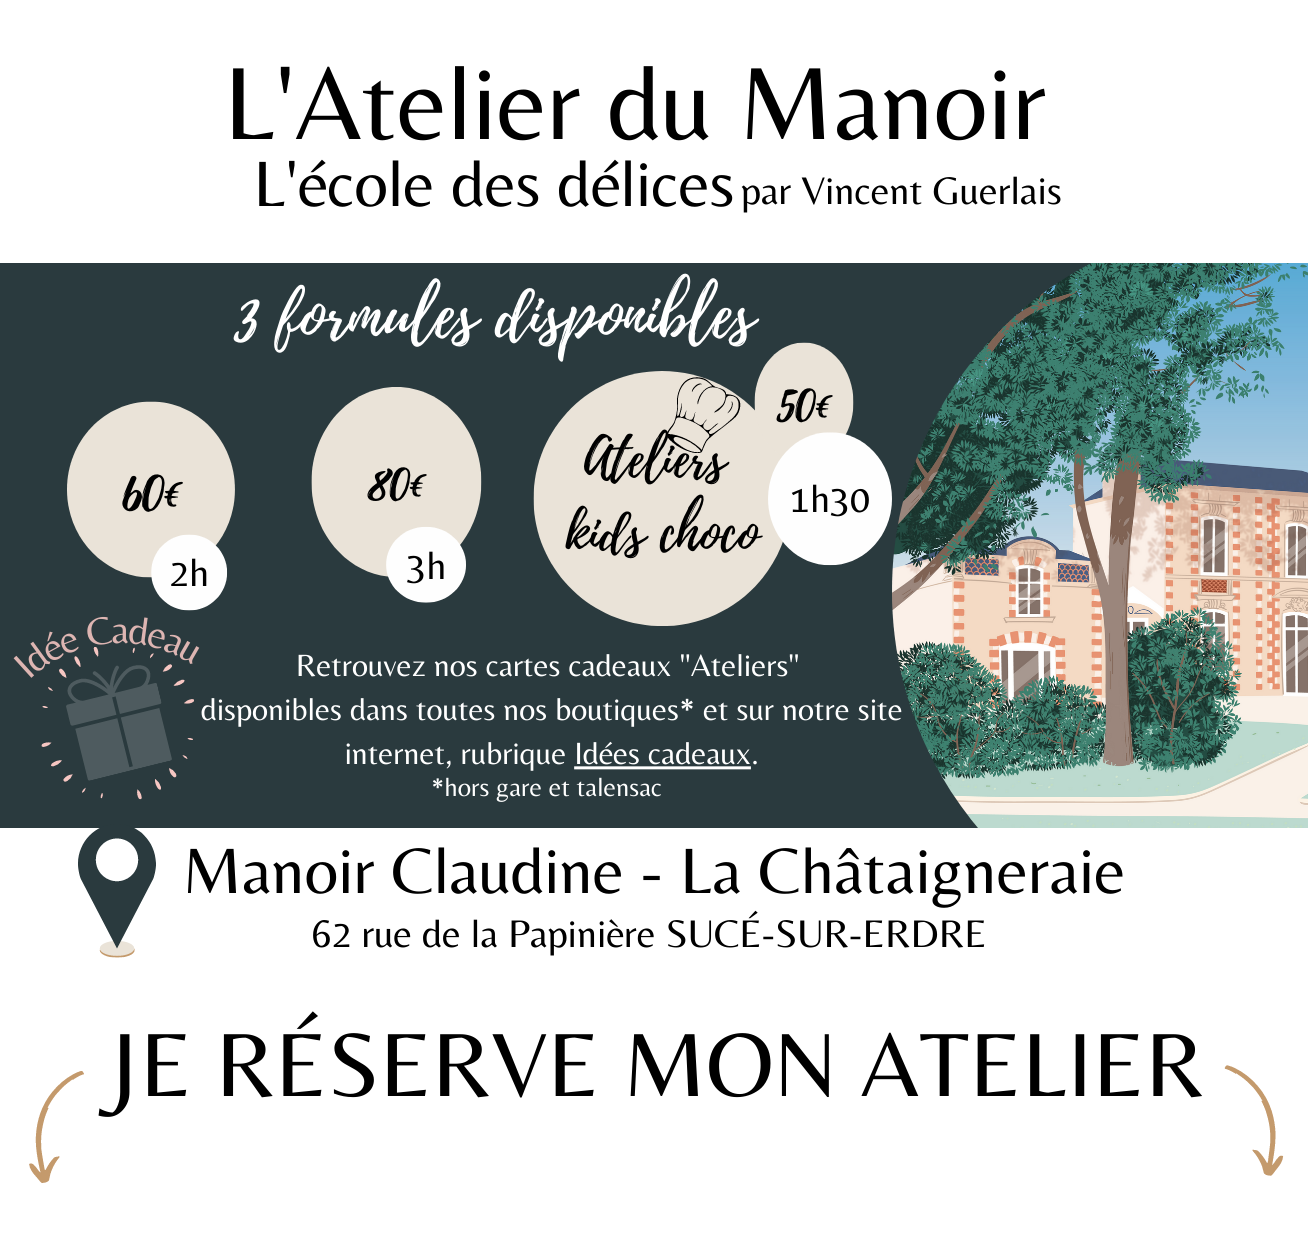 Manoir Claudine - stages Vincent Guerlais